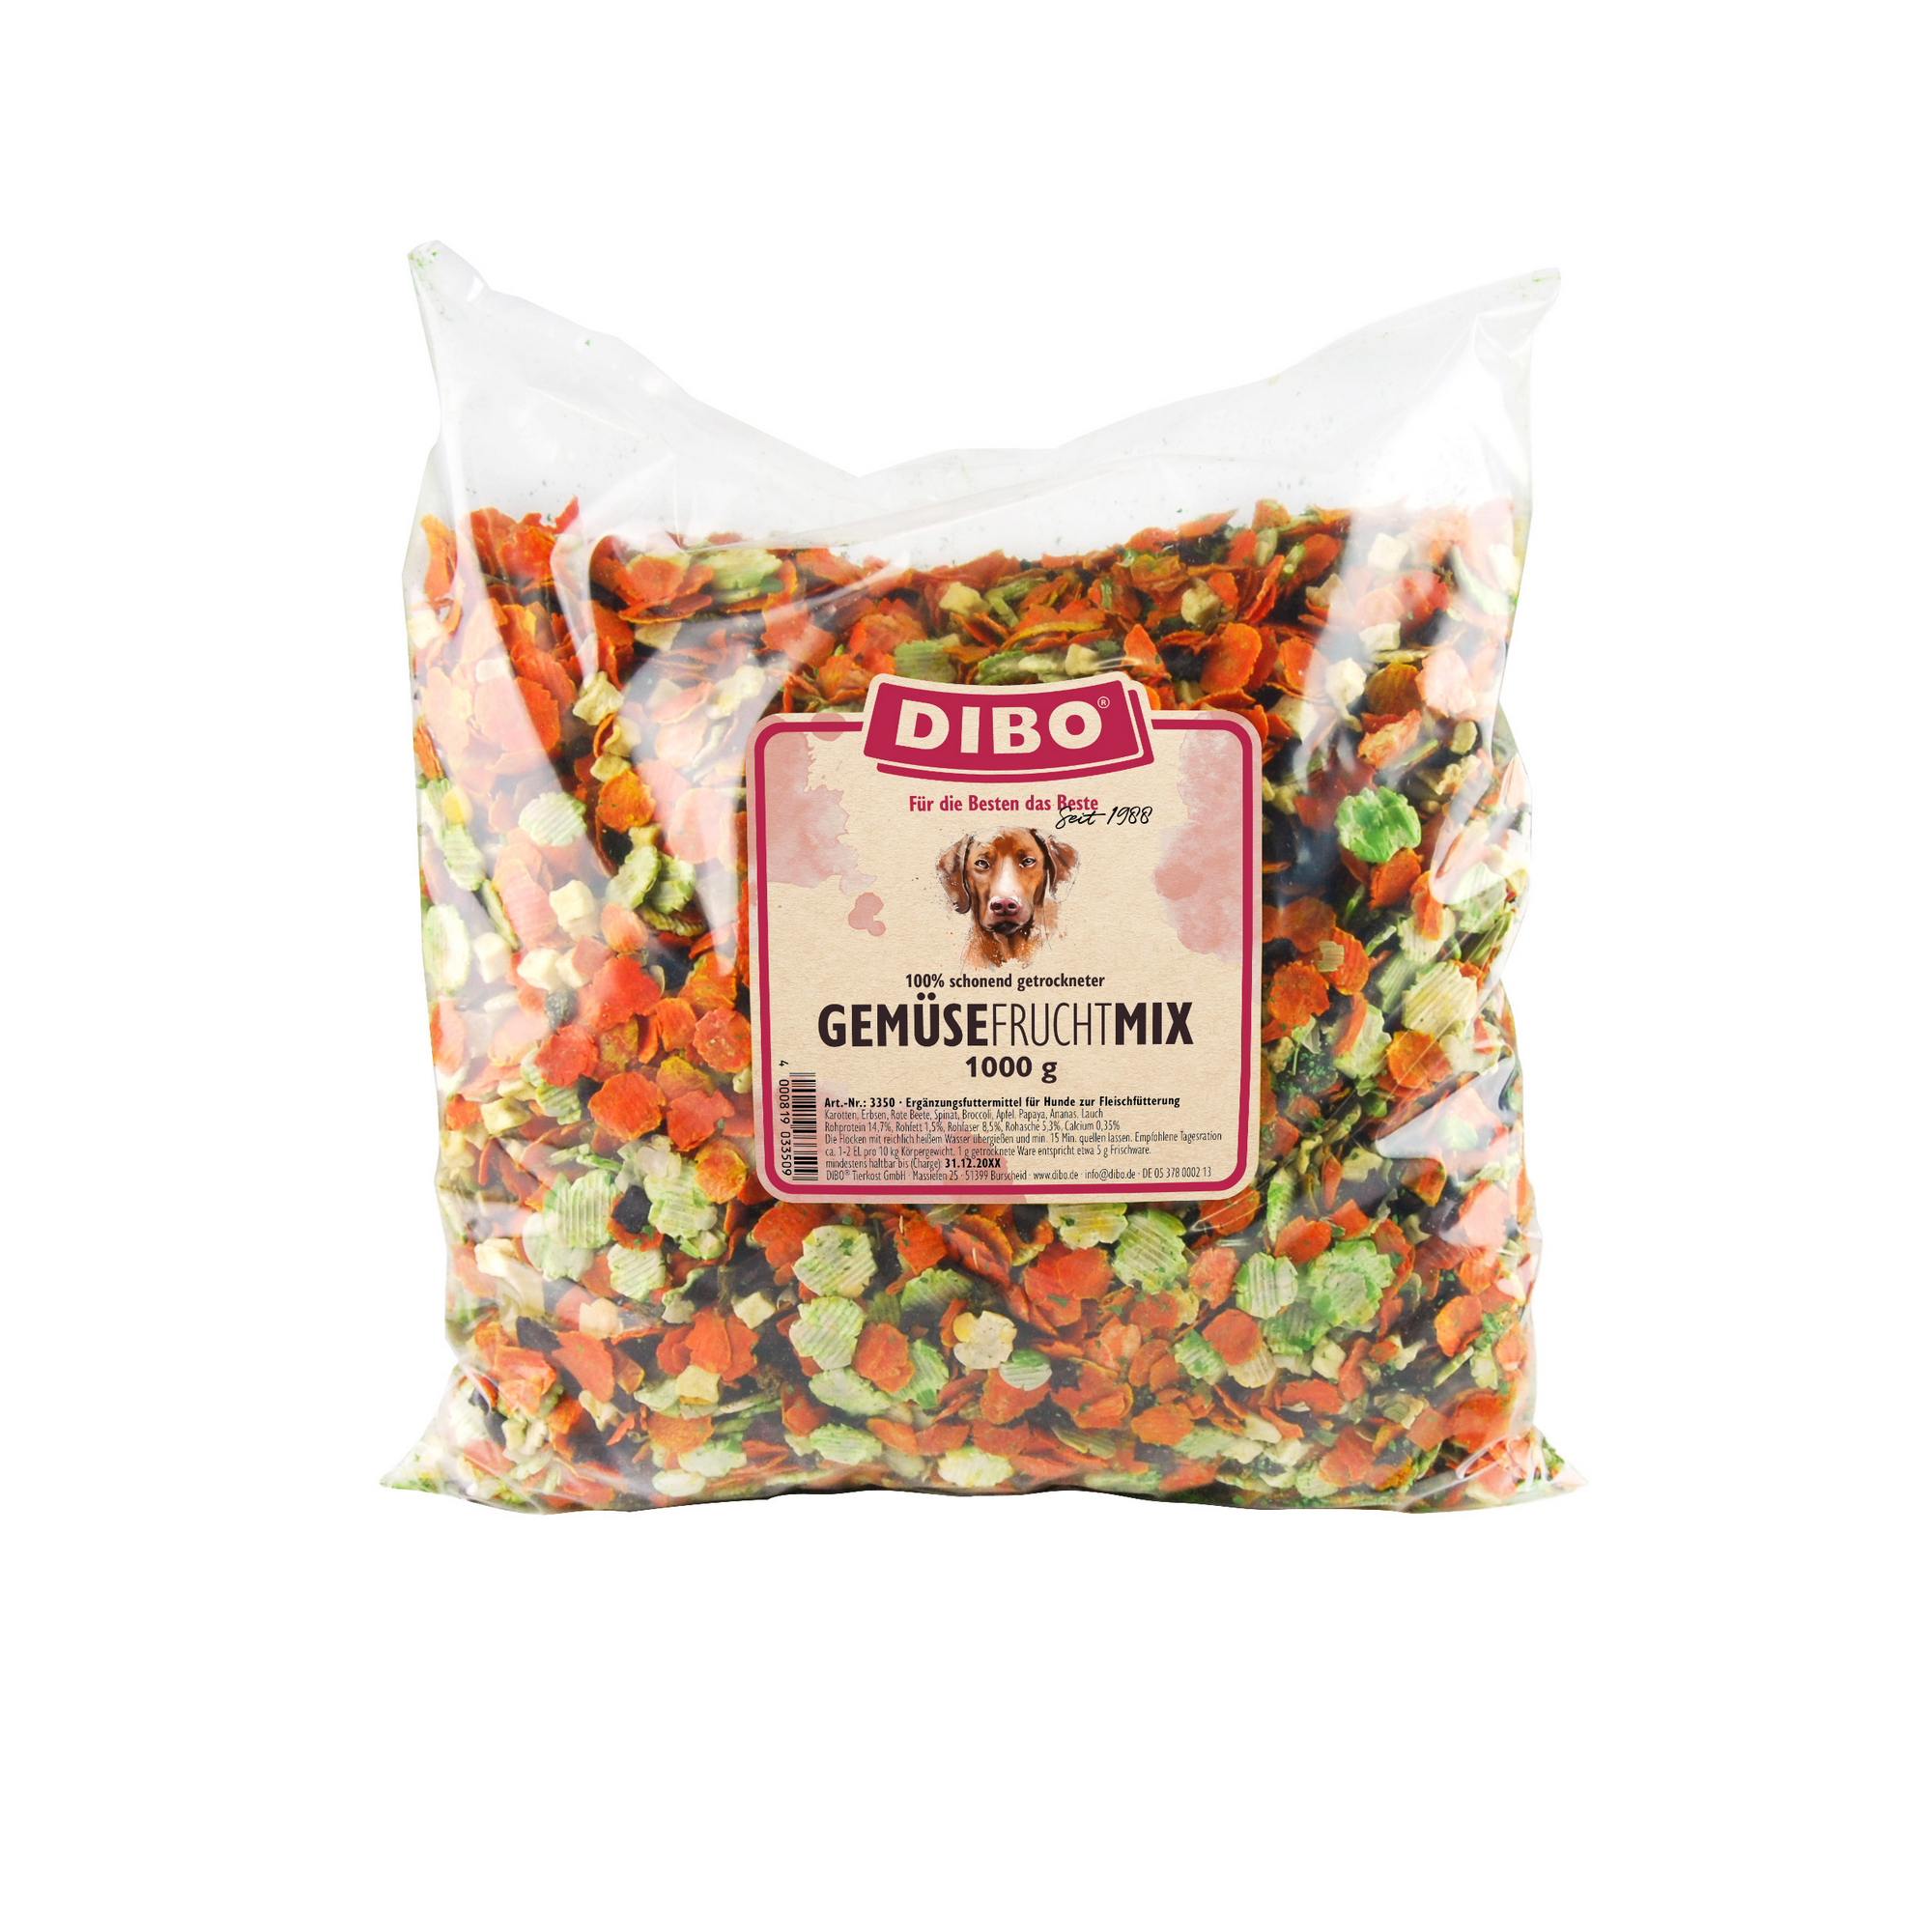 Gemüse-Frucht-Mix 1 Kg + product picture